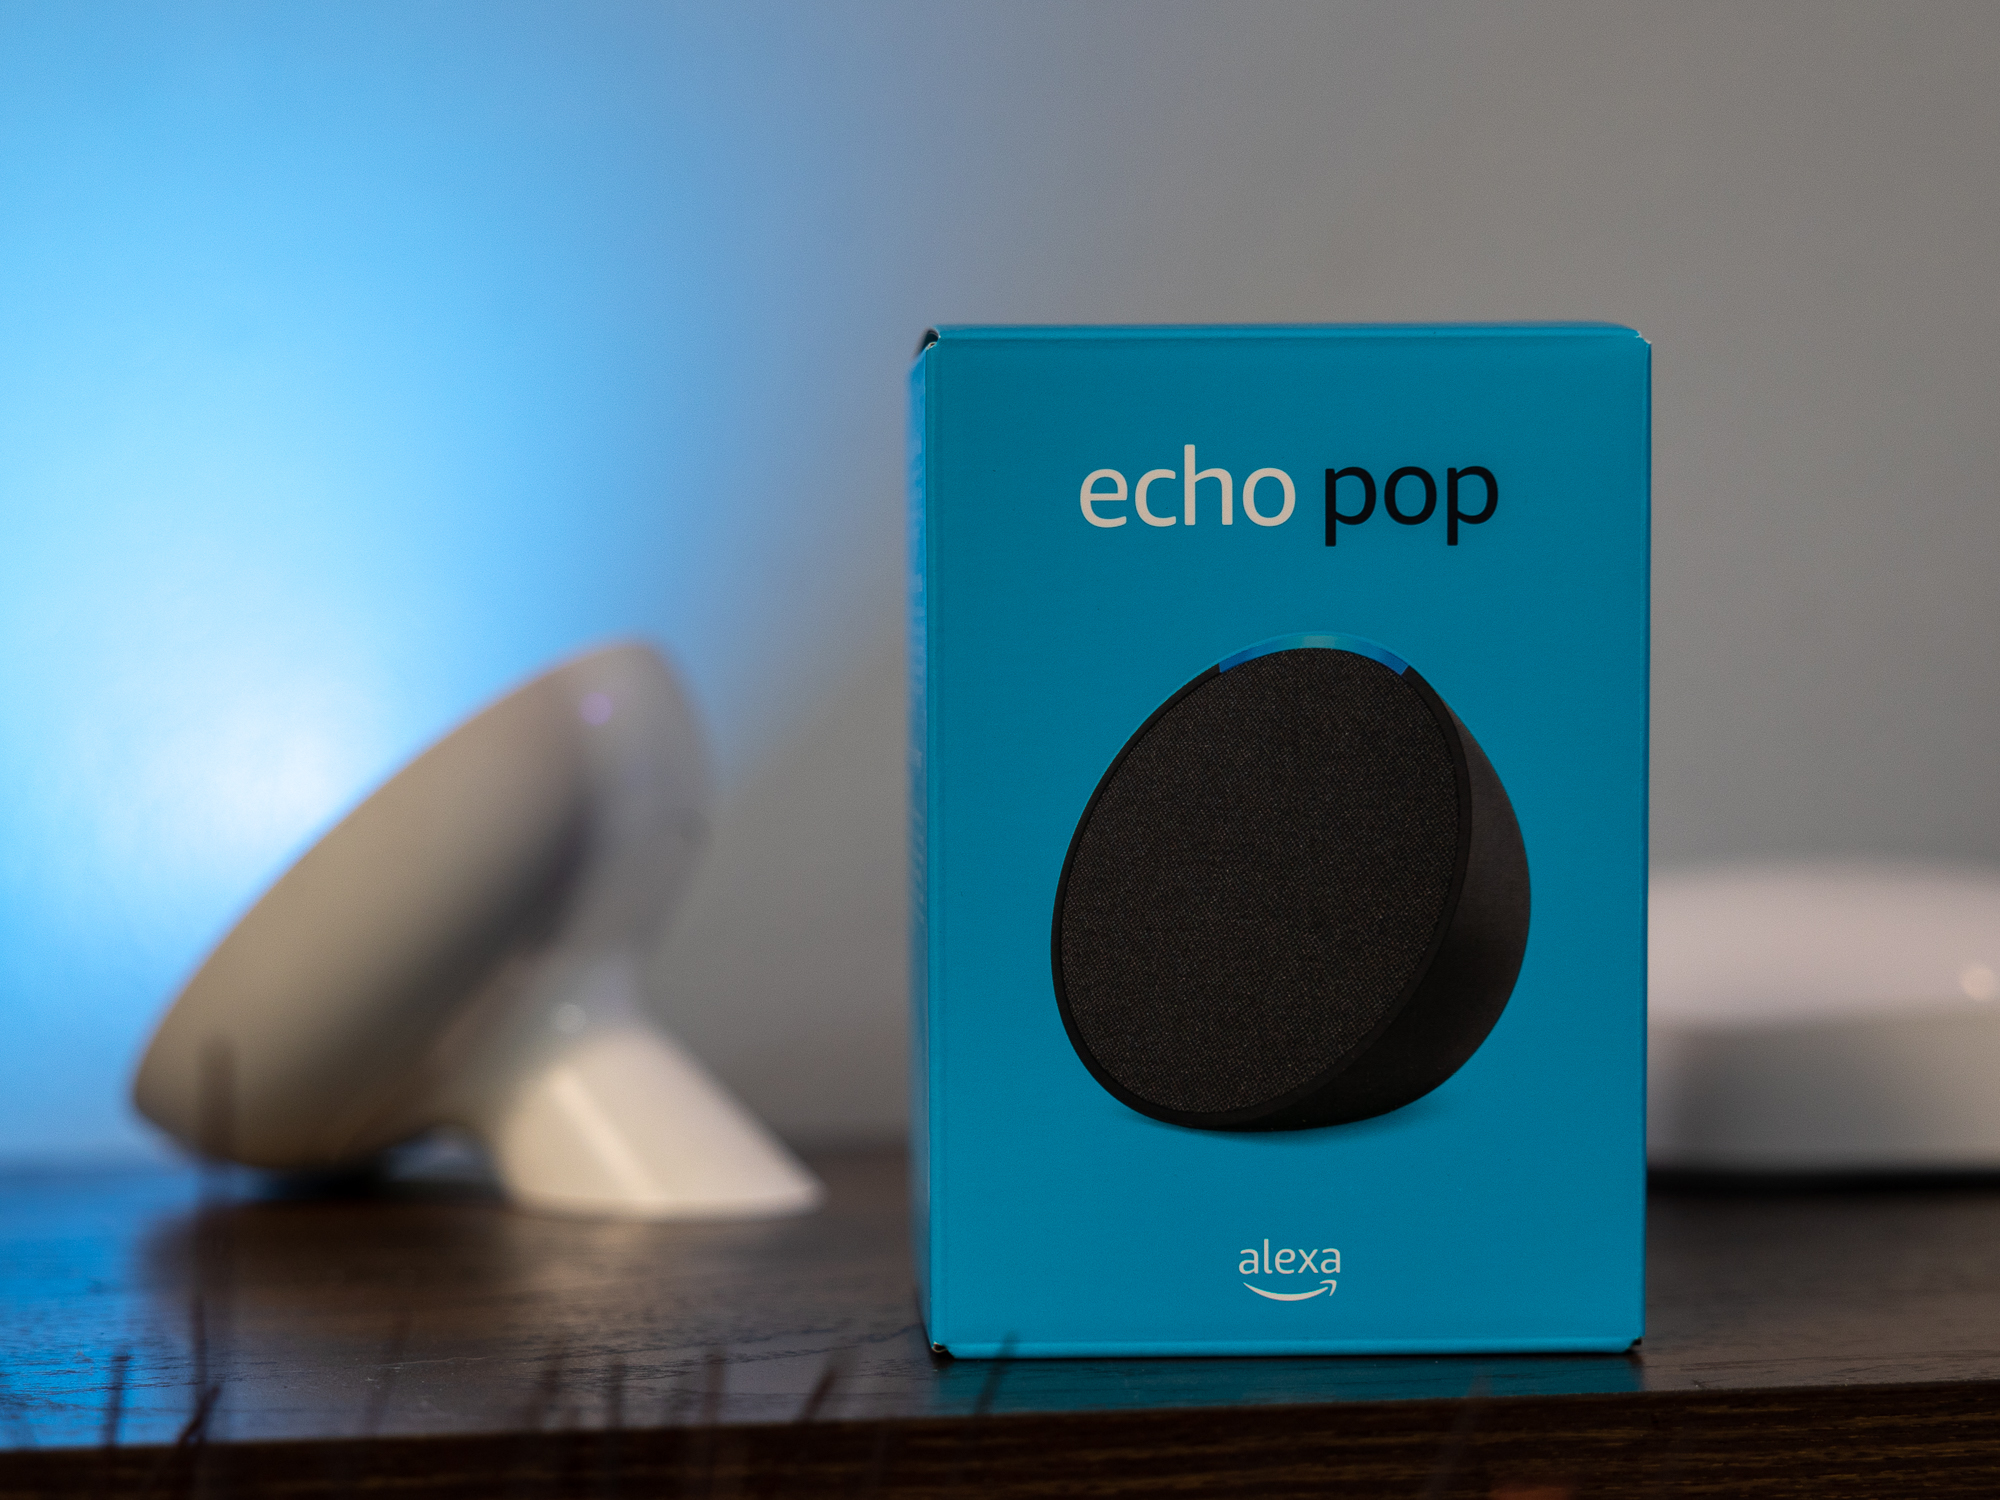 Echo Dot vs.  Echo Pop: Which one should you buy